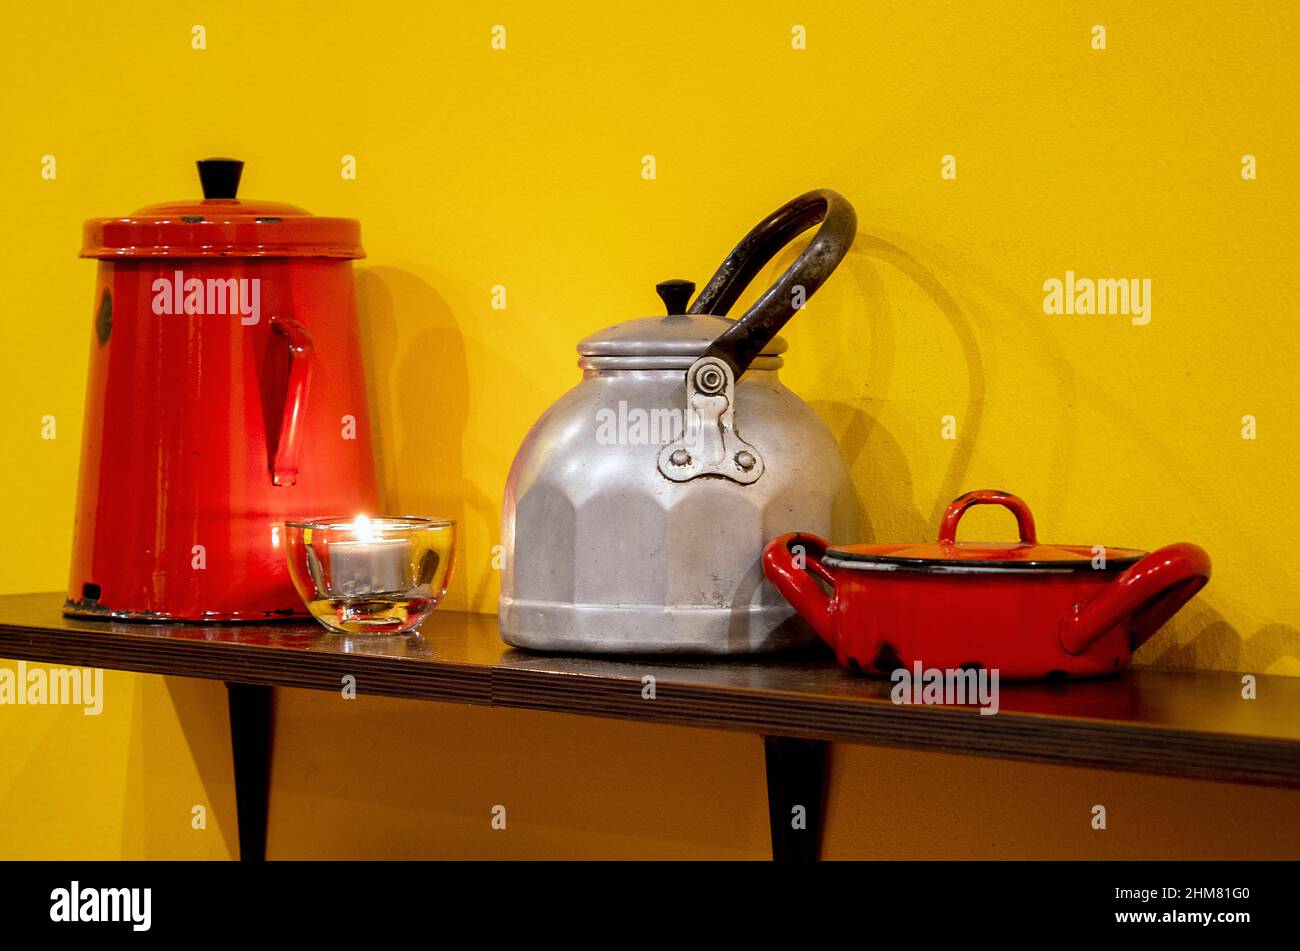 Intérieur de cuisine avec vaisselle, vaisselle, fer à repasser et théière sur une étagère contre un mur jaune Banque D'Images